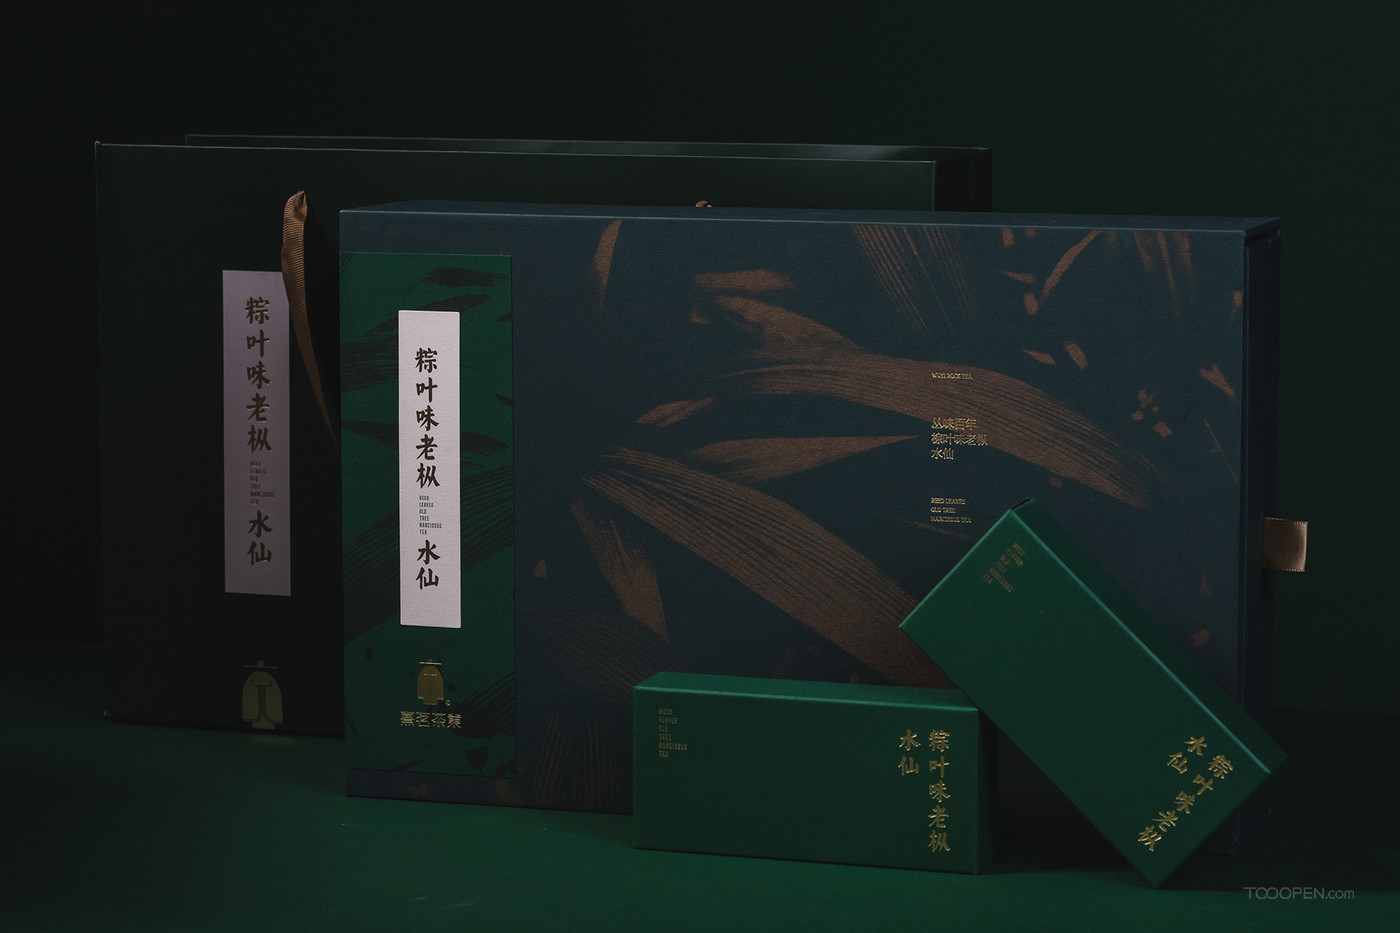 国创传统高端茶叶包装设计作品大赏-12